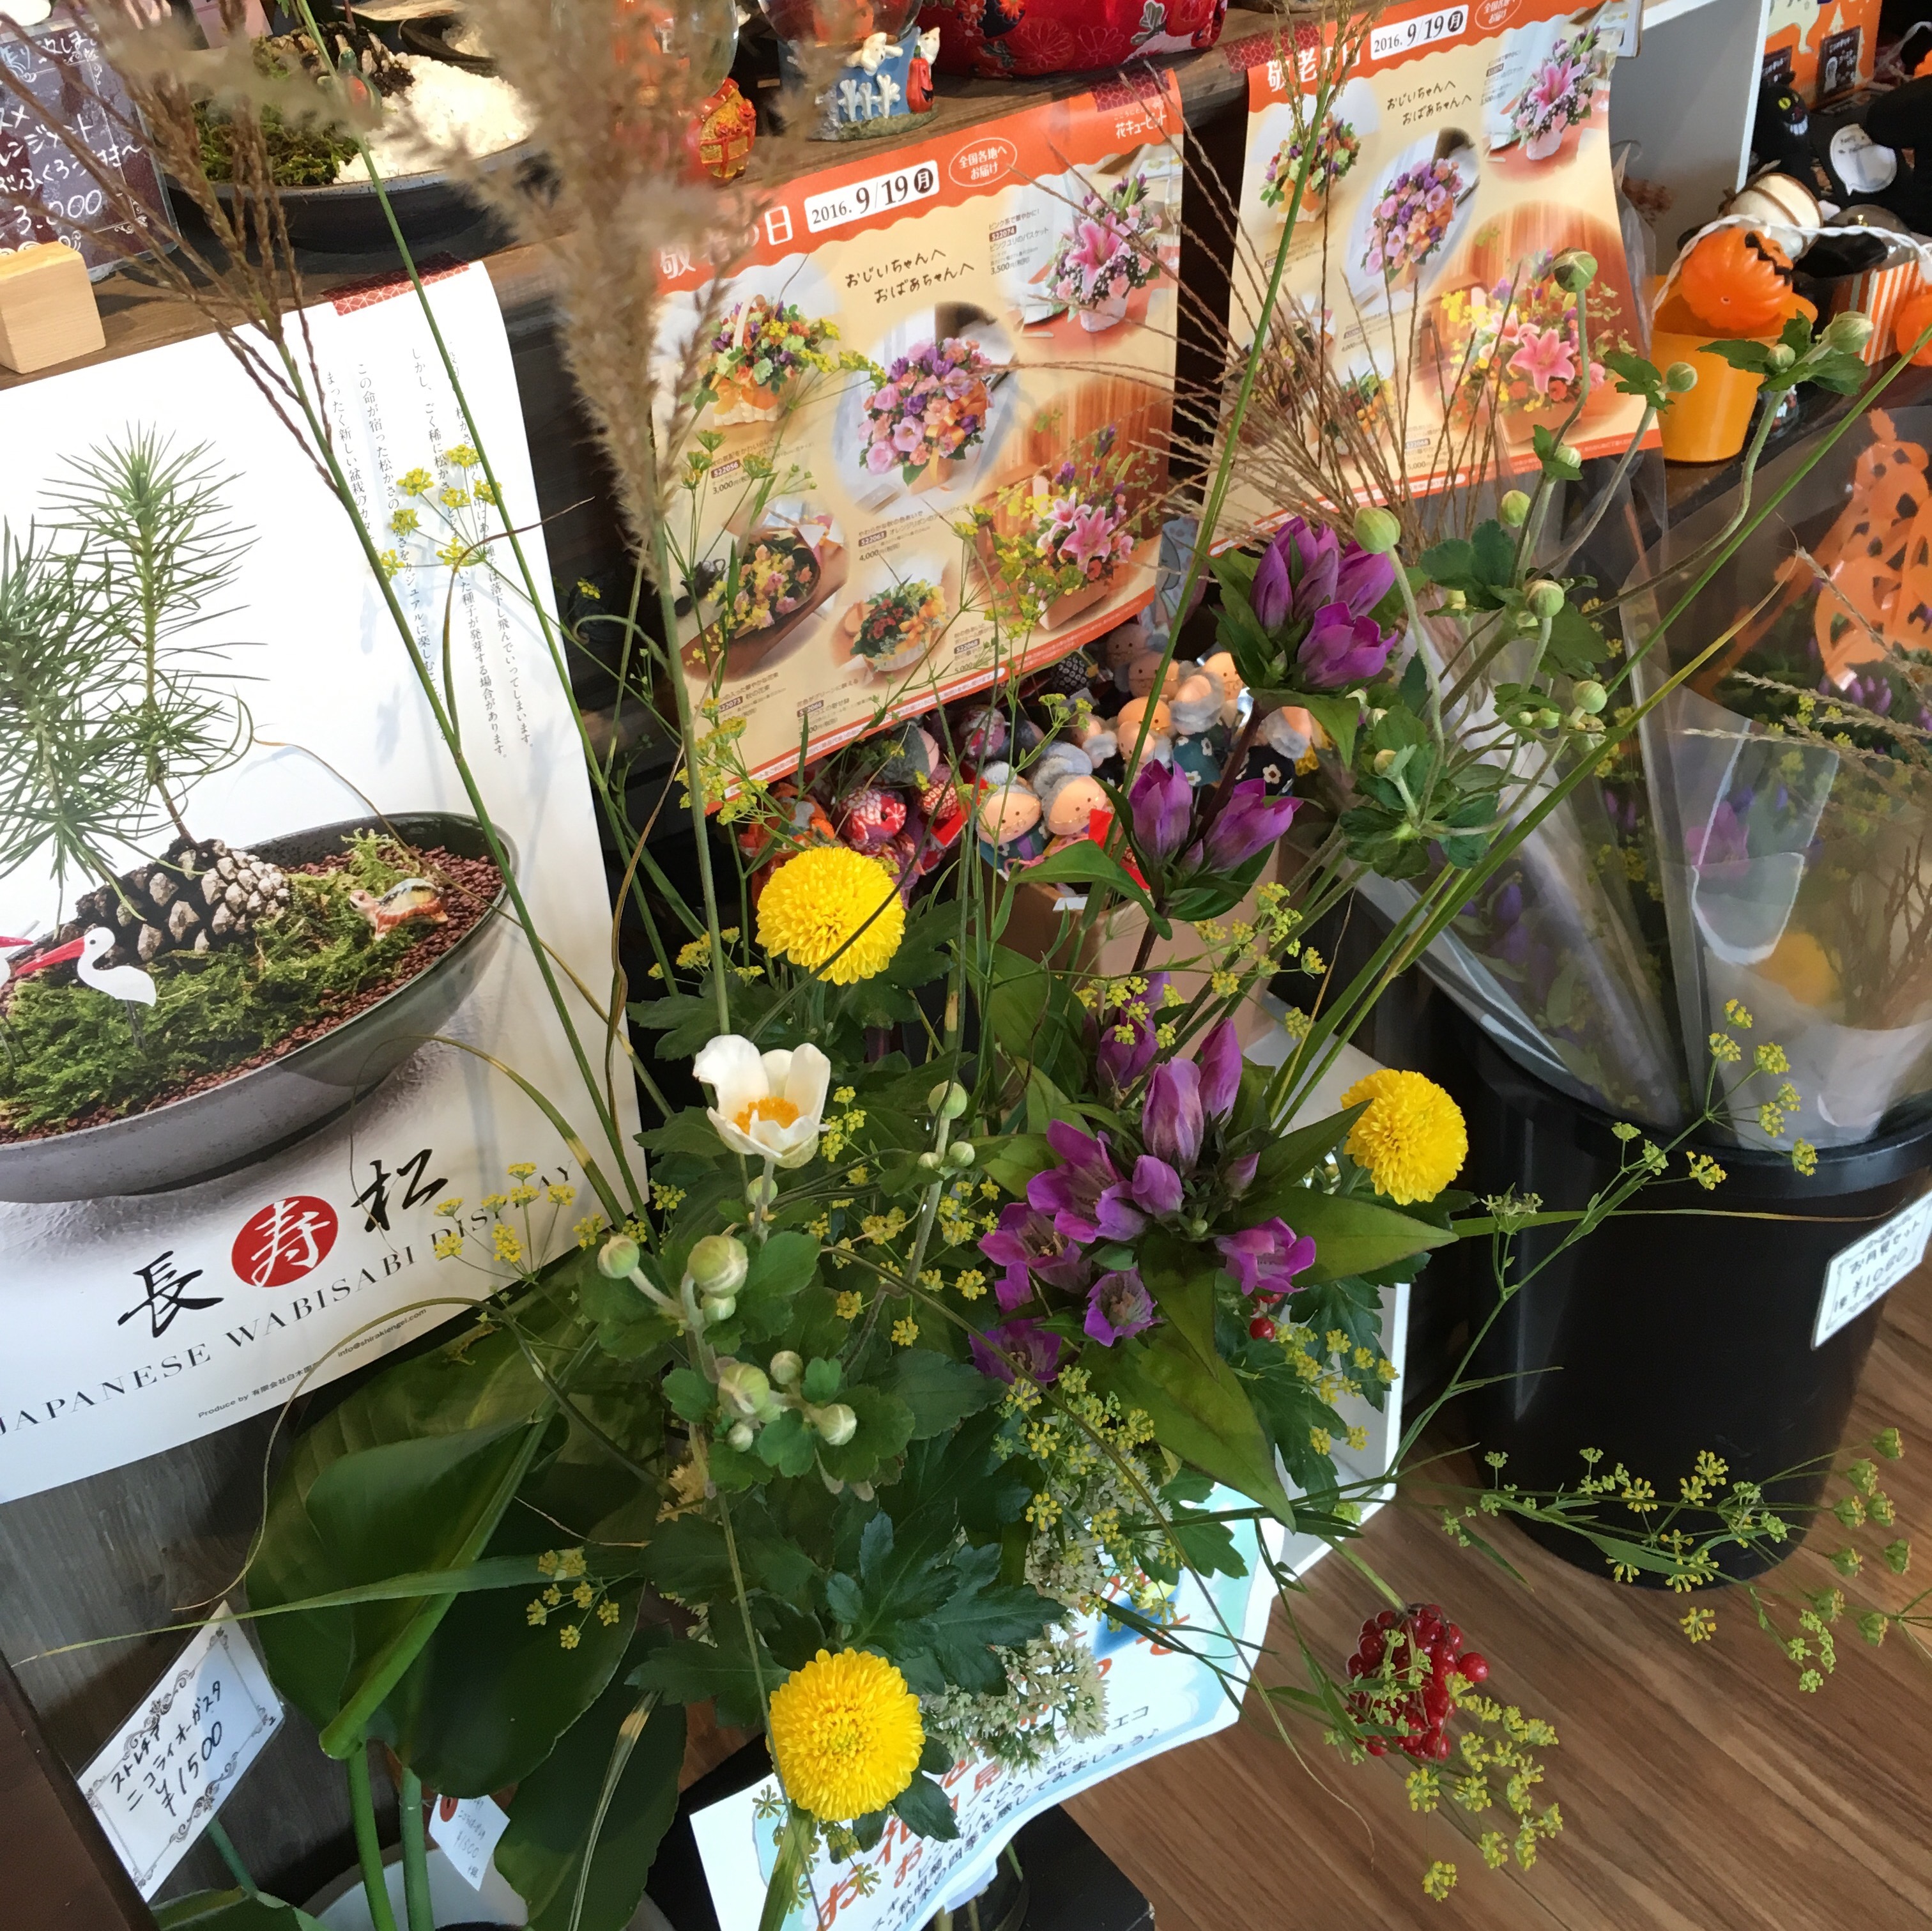 お月見 中秋の名月 敬老の日 ハロウィン 10月イベント 花のギフトの配達なら知多市にしの台の花屋 花の生華園 せいかえん へ